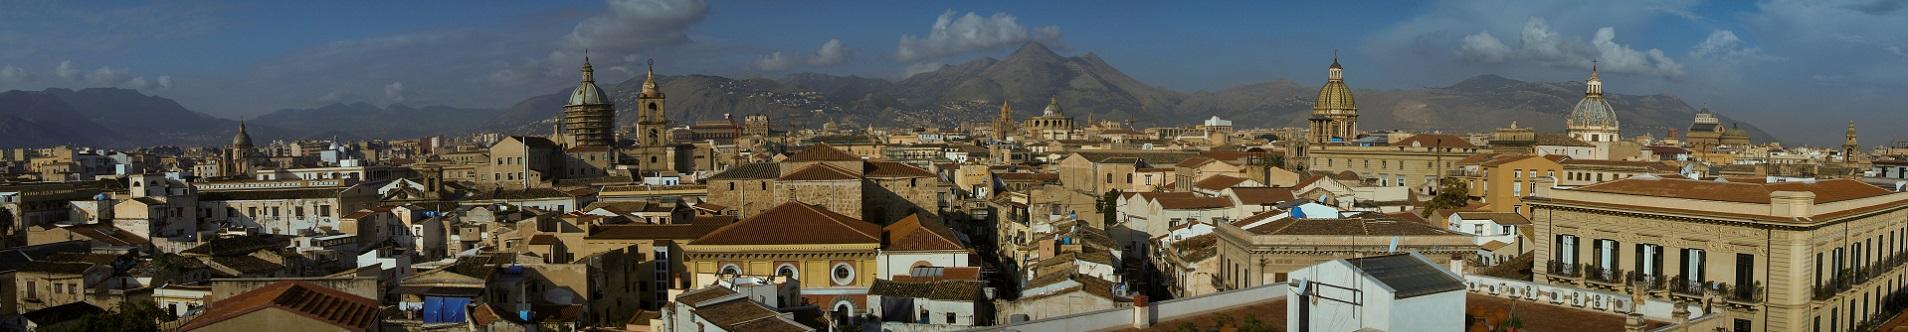 <p>Ville e case vacanze in Sicilia vicino Palermo</p>